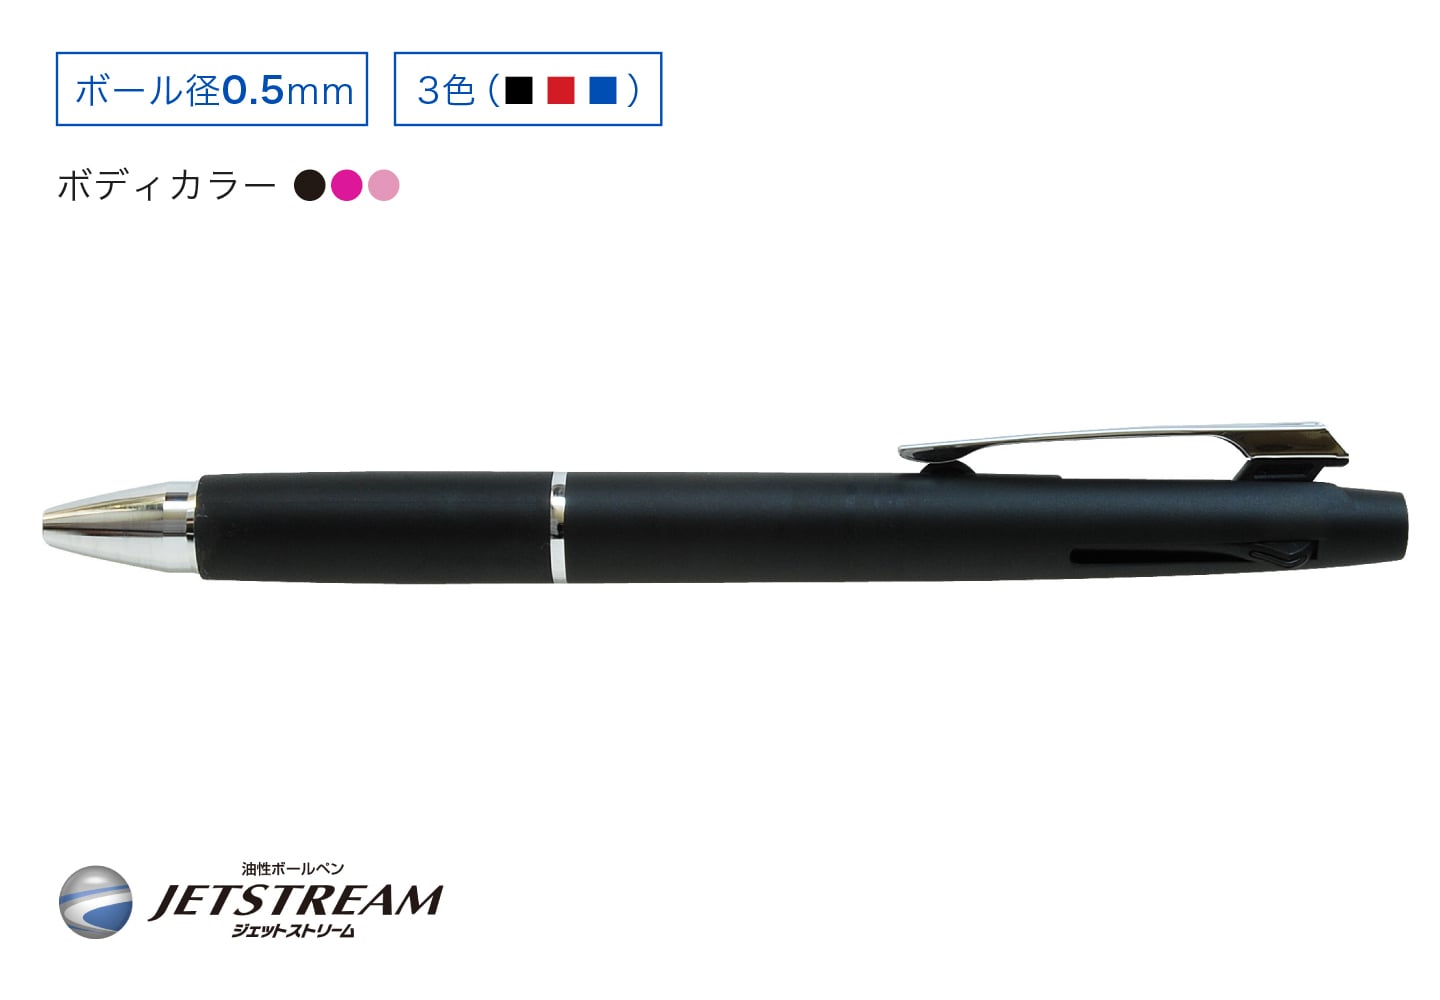 JETSTREAM 3色ボールペン メタリック0.5mm